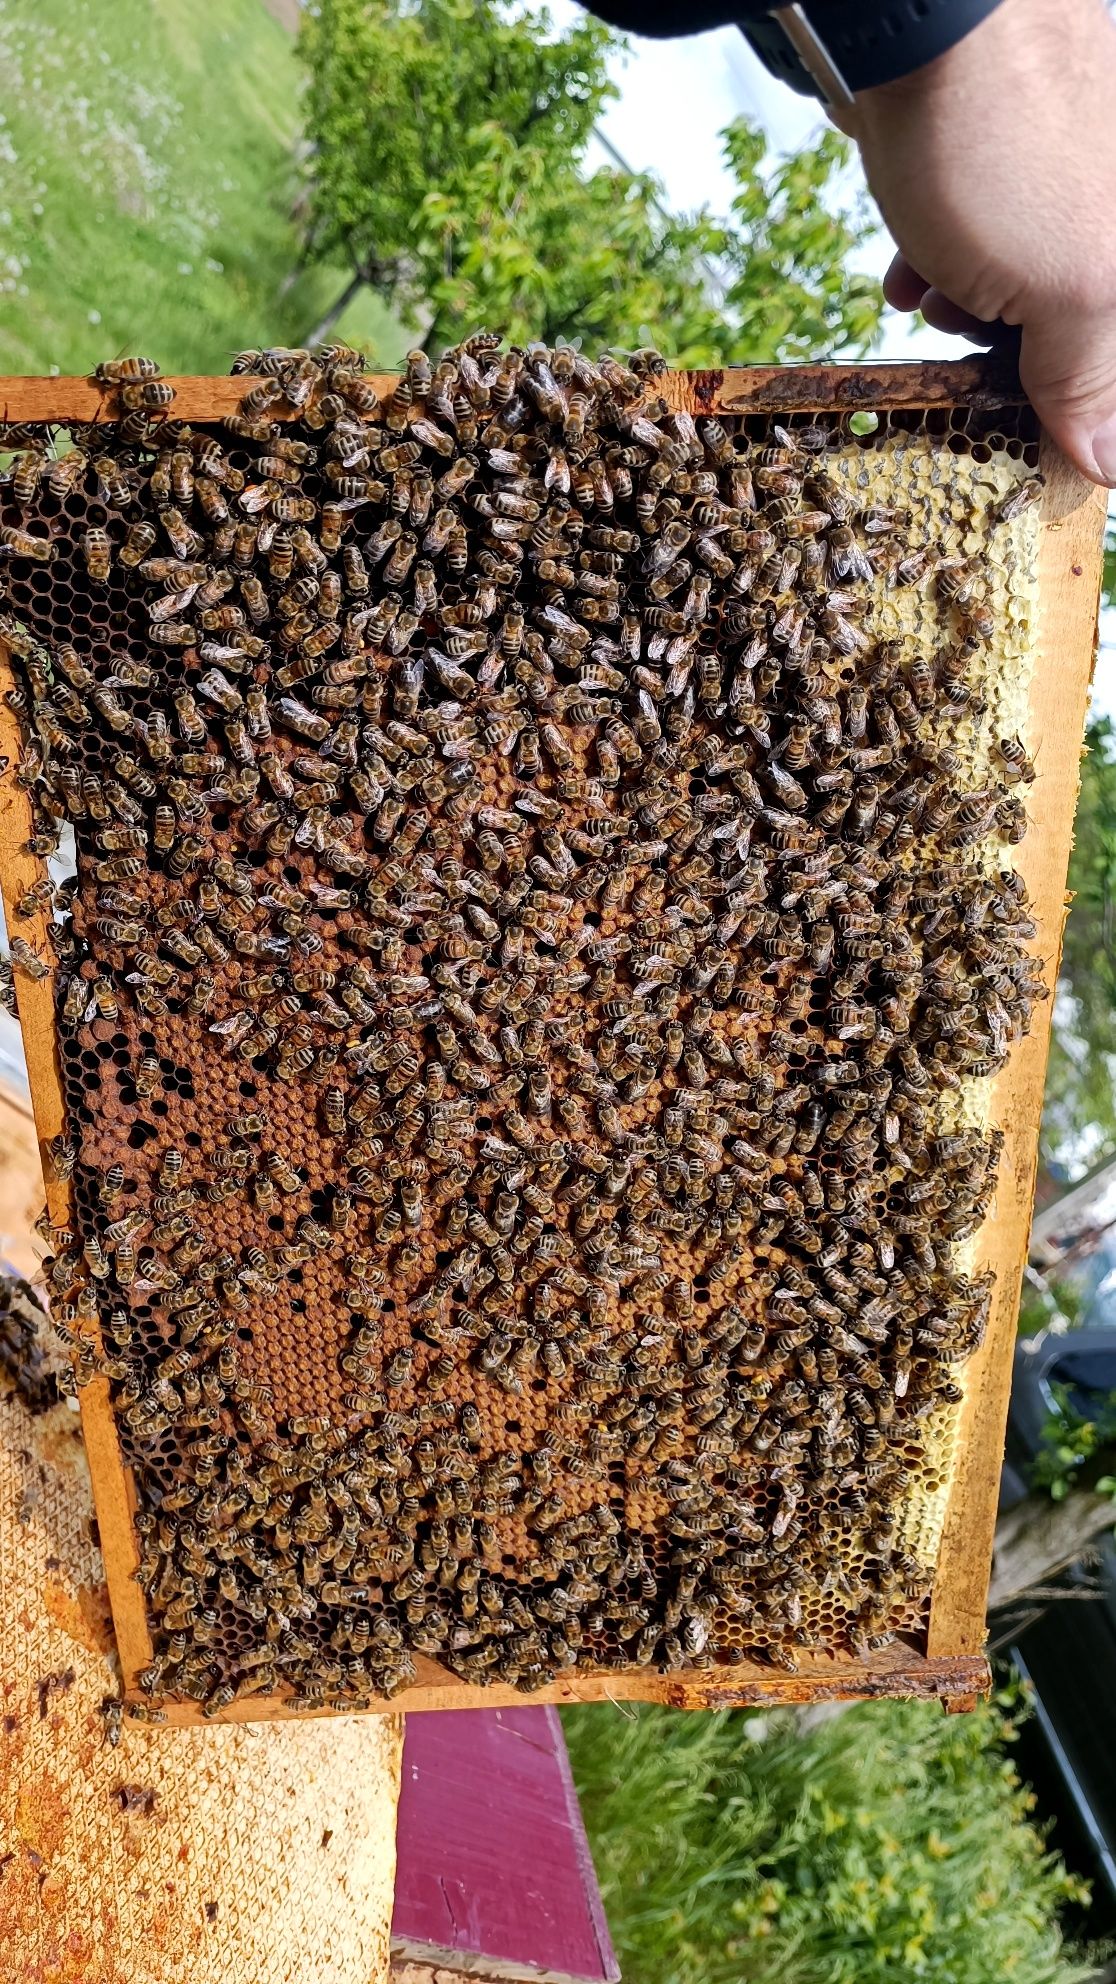 Vand familii albine pregătite de salcâm